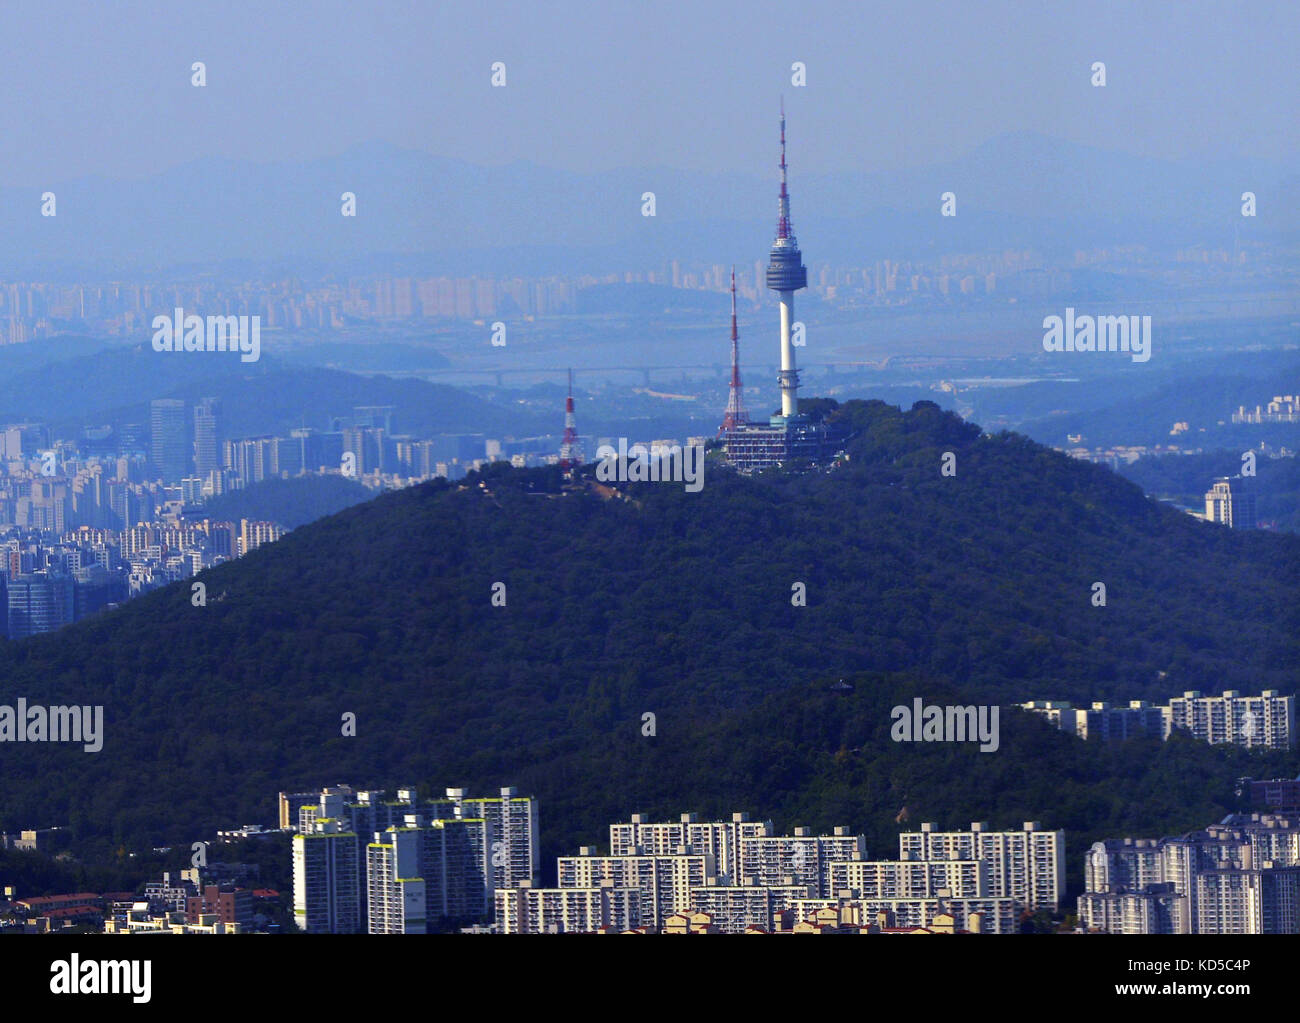 The N Seoul Tower in Seoul. Stock Photo